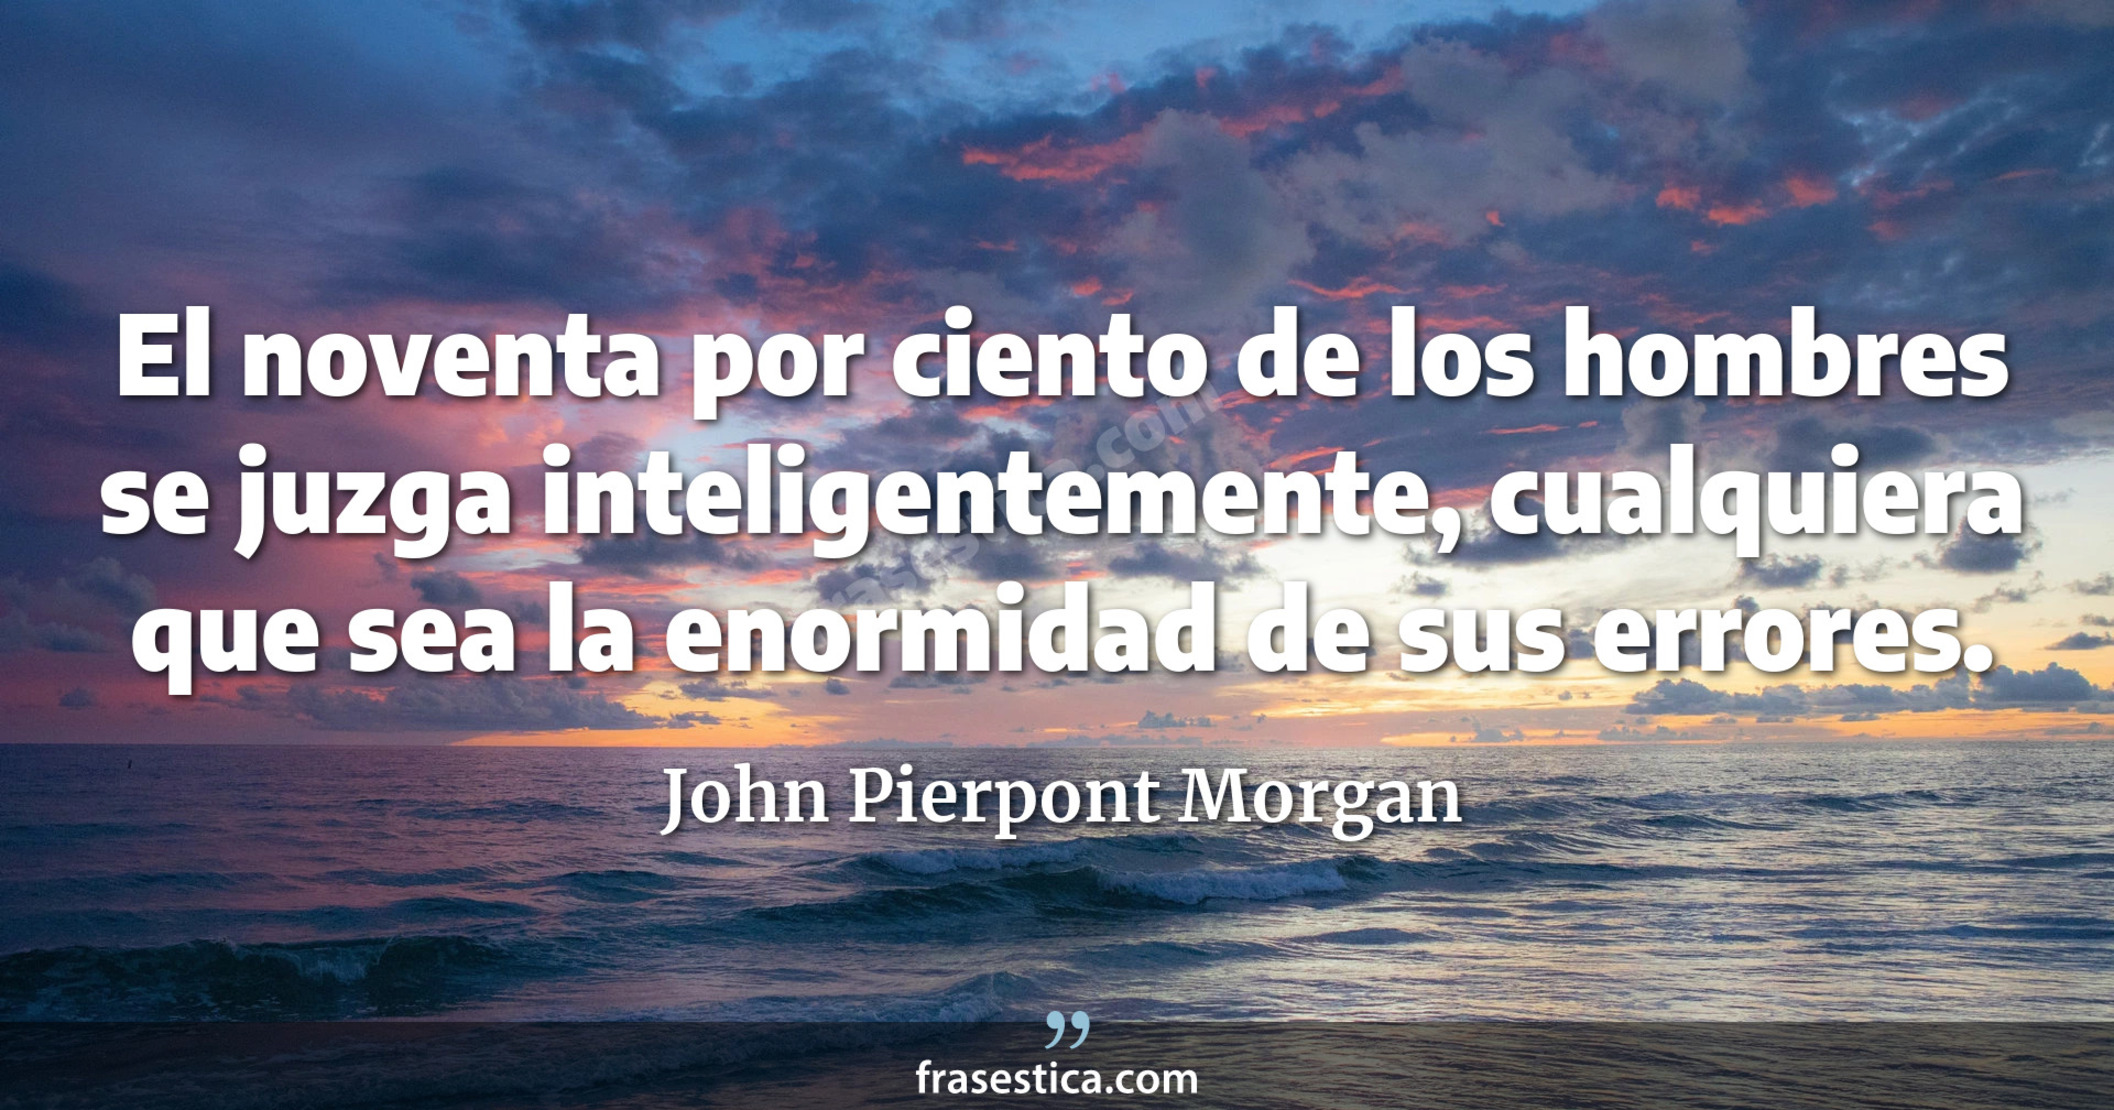 El noventa por ciento de los hombres se juzga inteligentemente, cualquiera que sea la enormidad de sus errores. - John Pierpont Morgan